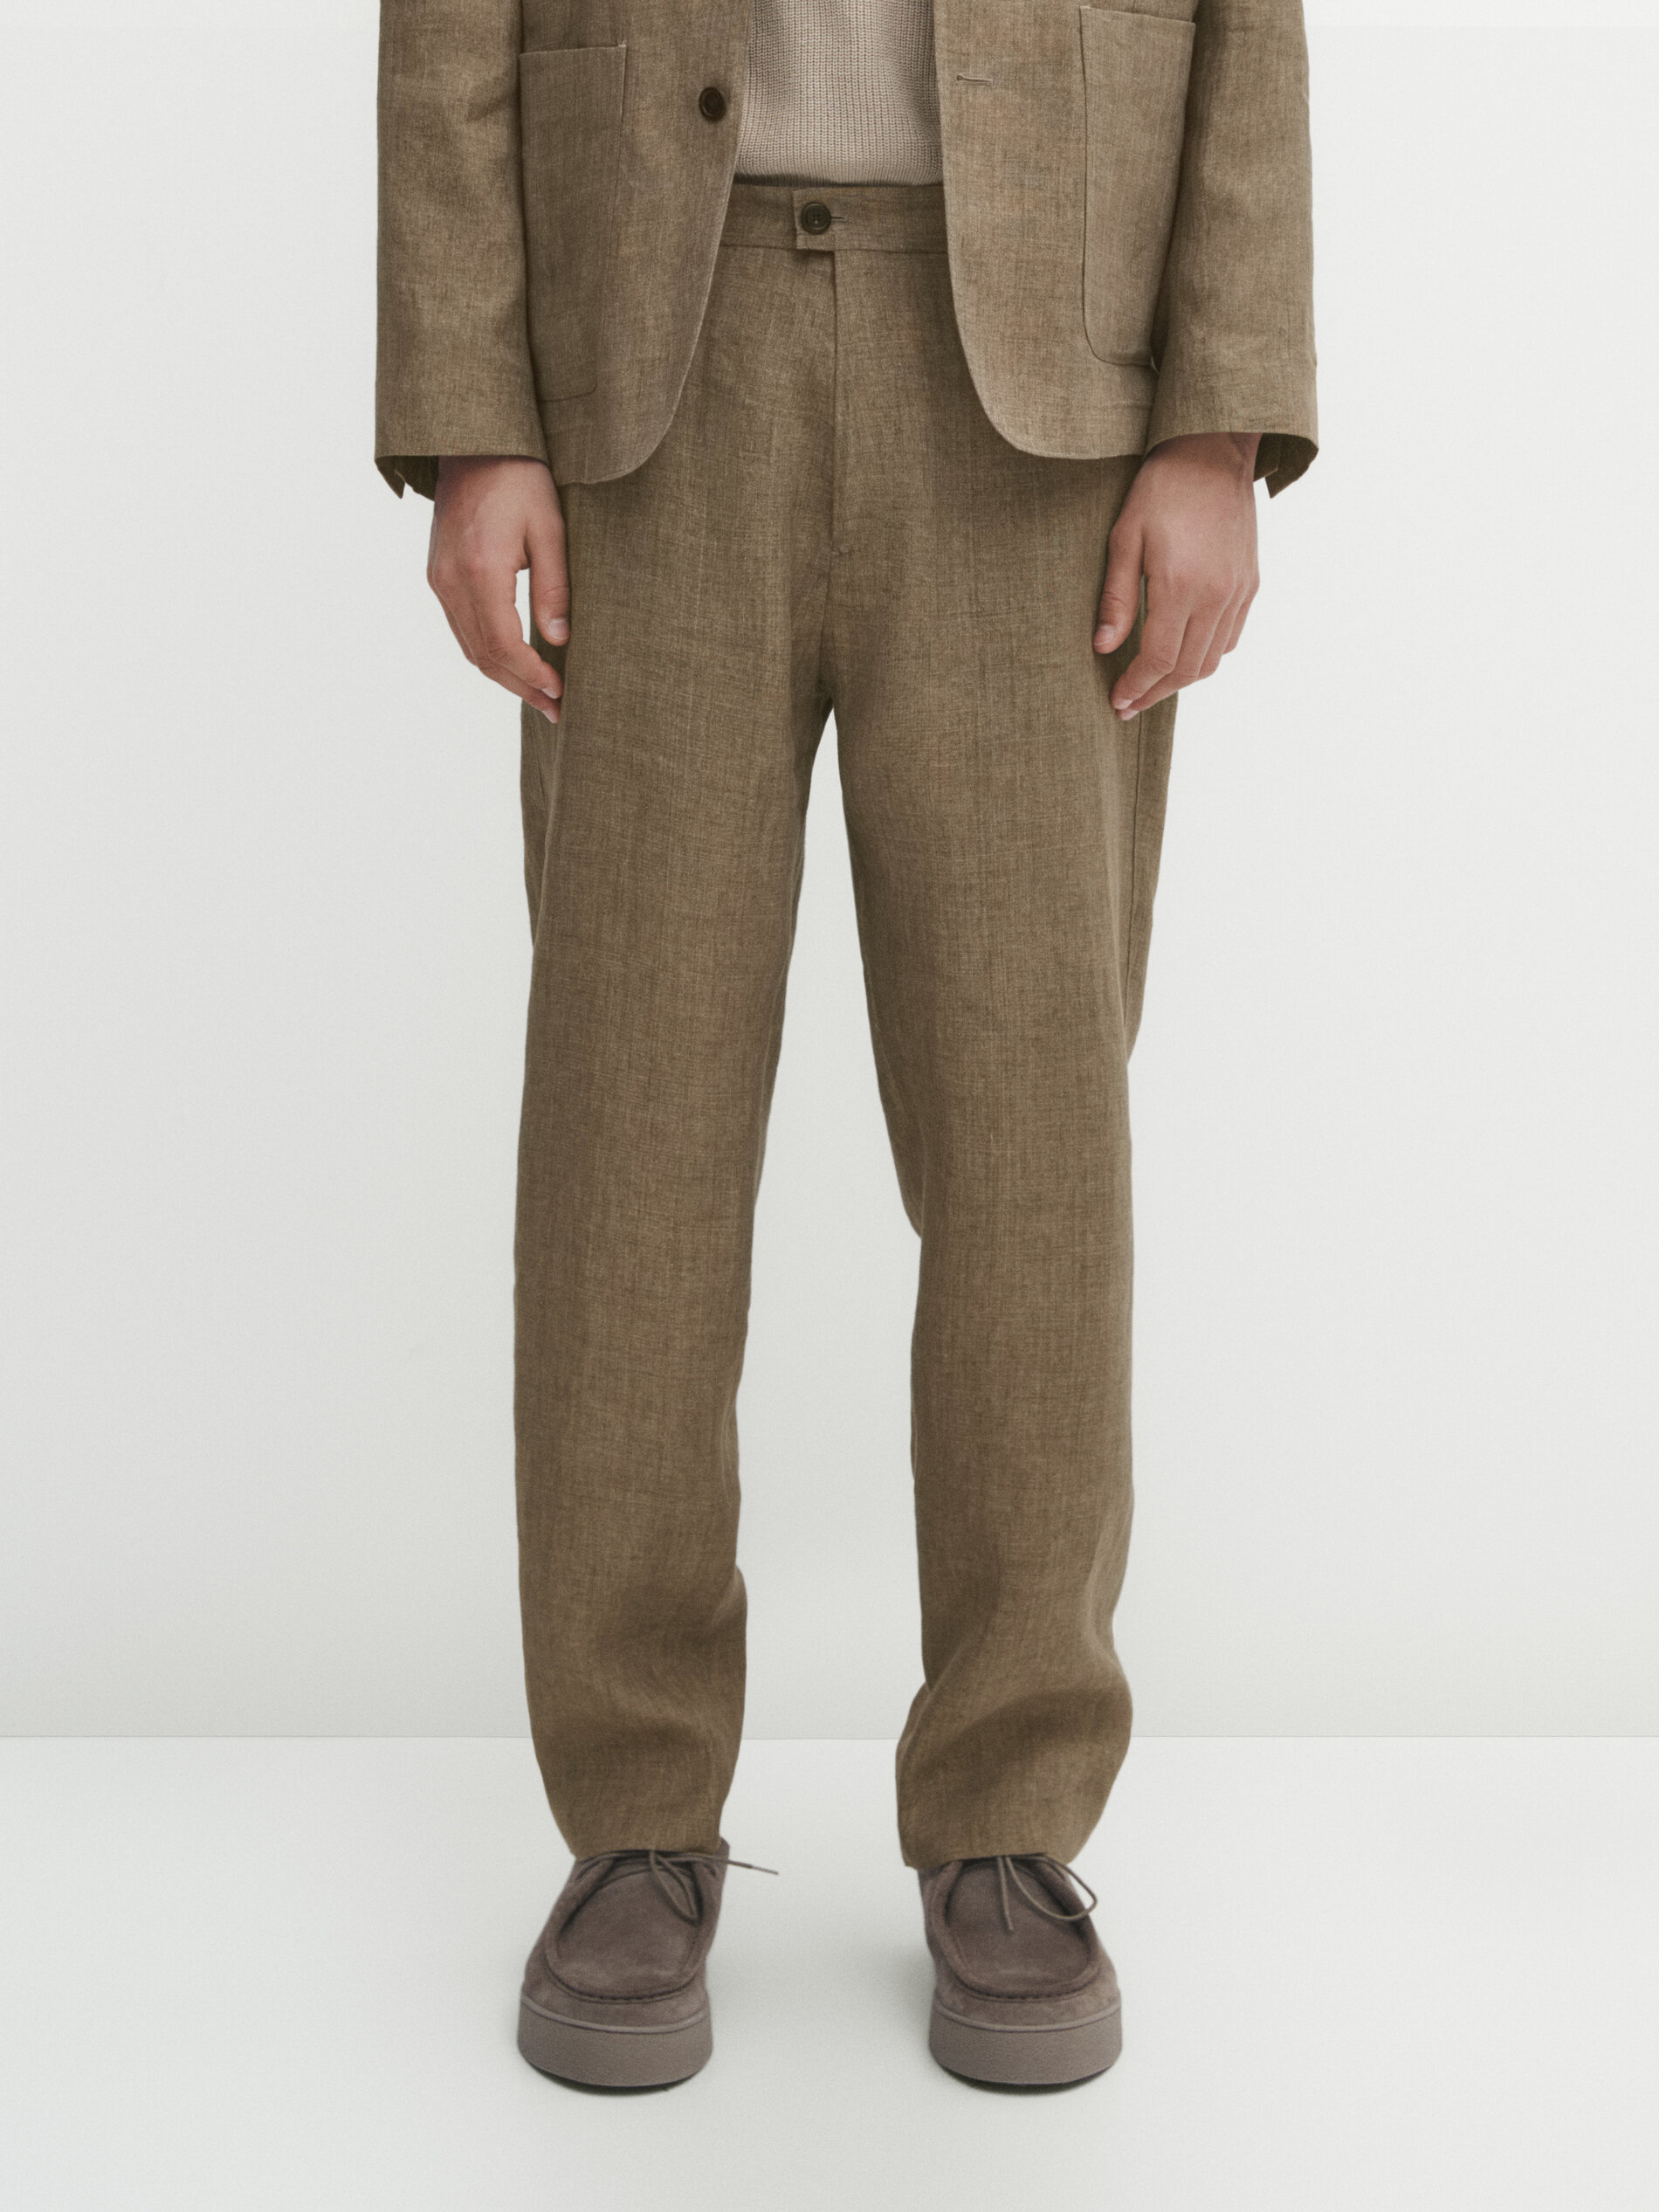 Buy Beige Trousers & Pants for Men by Styli Online | Ajio.com